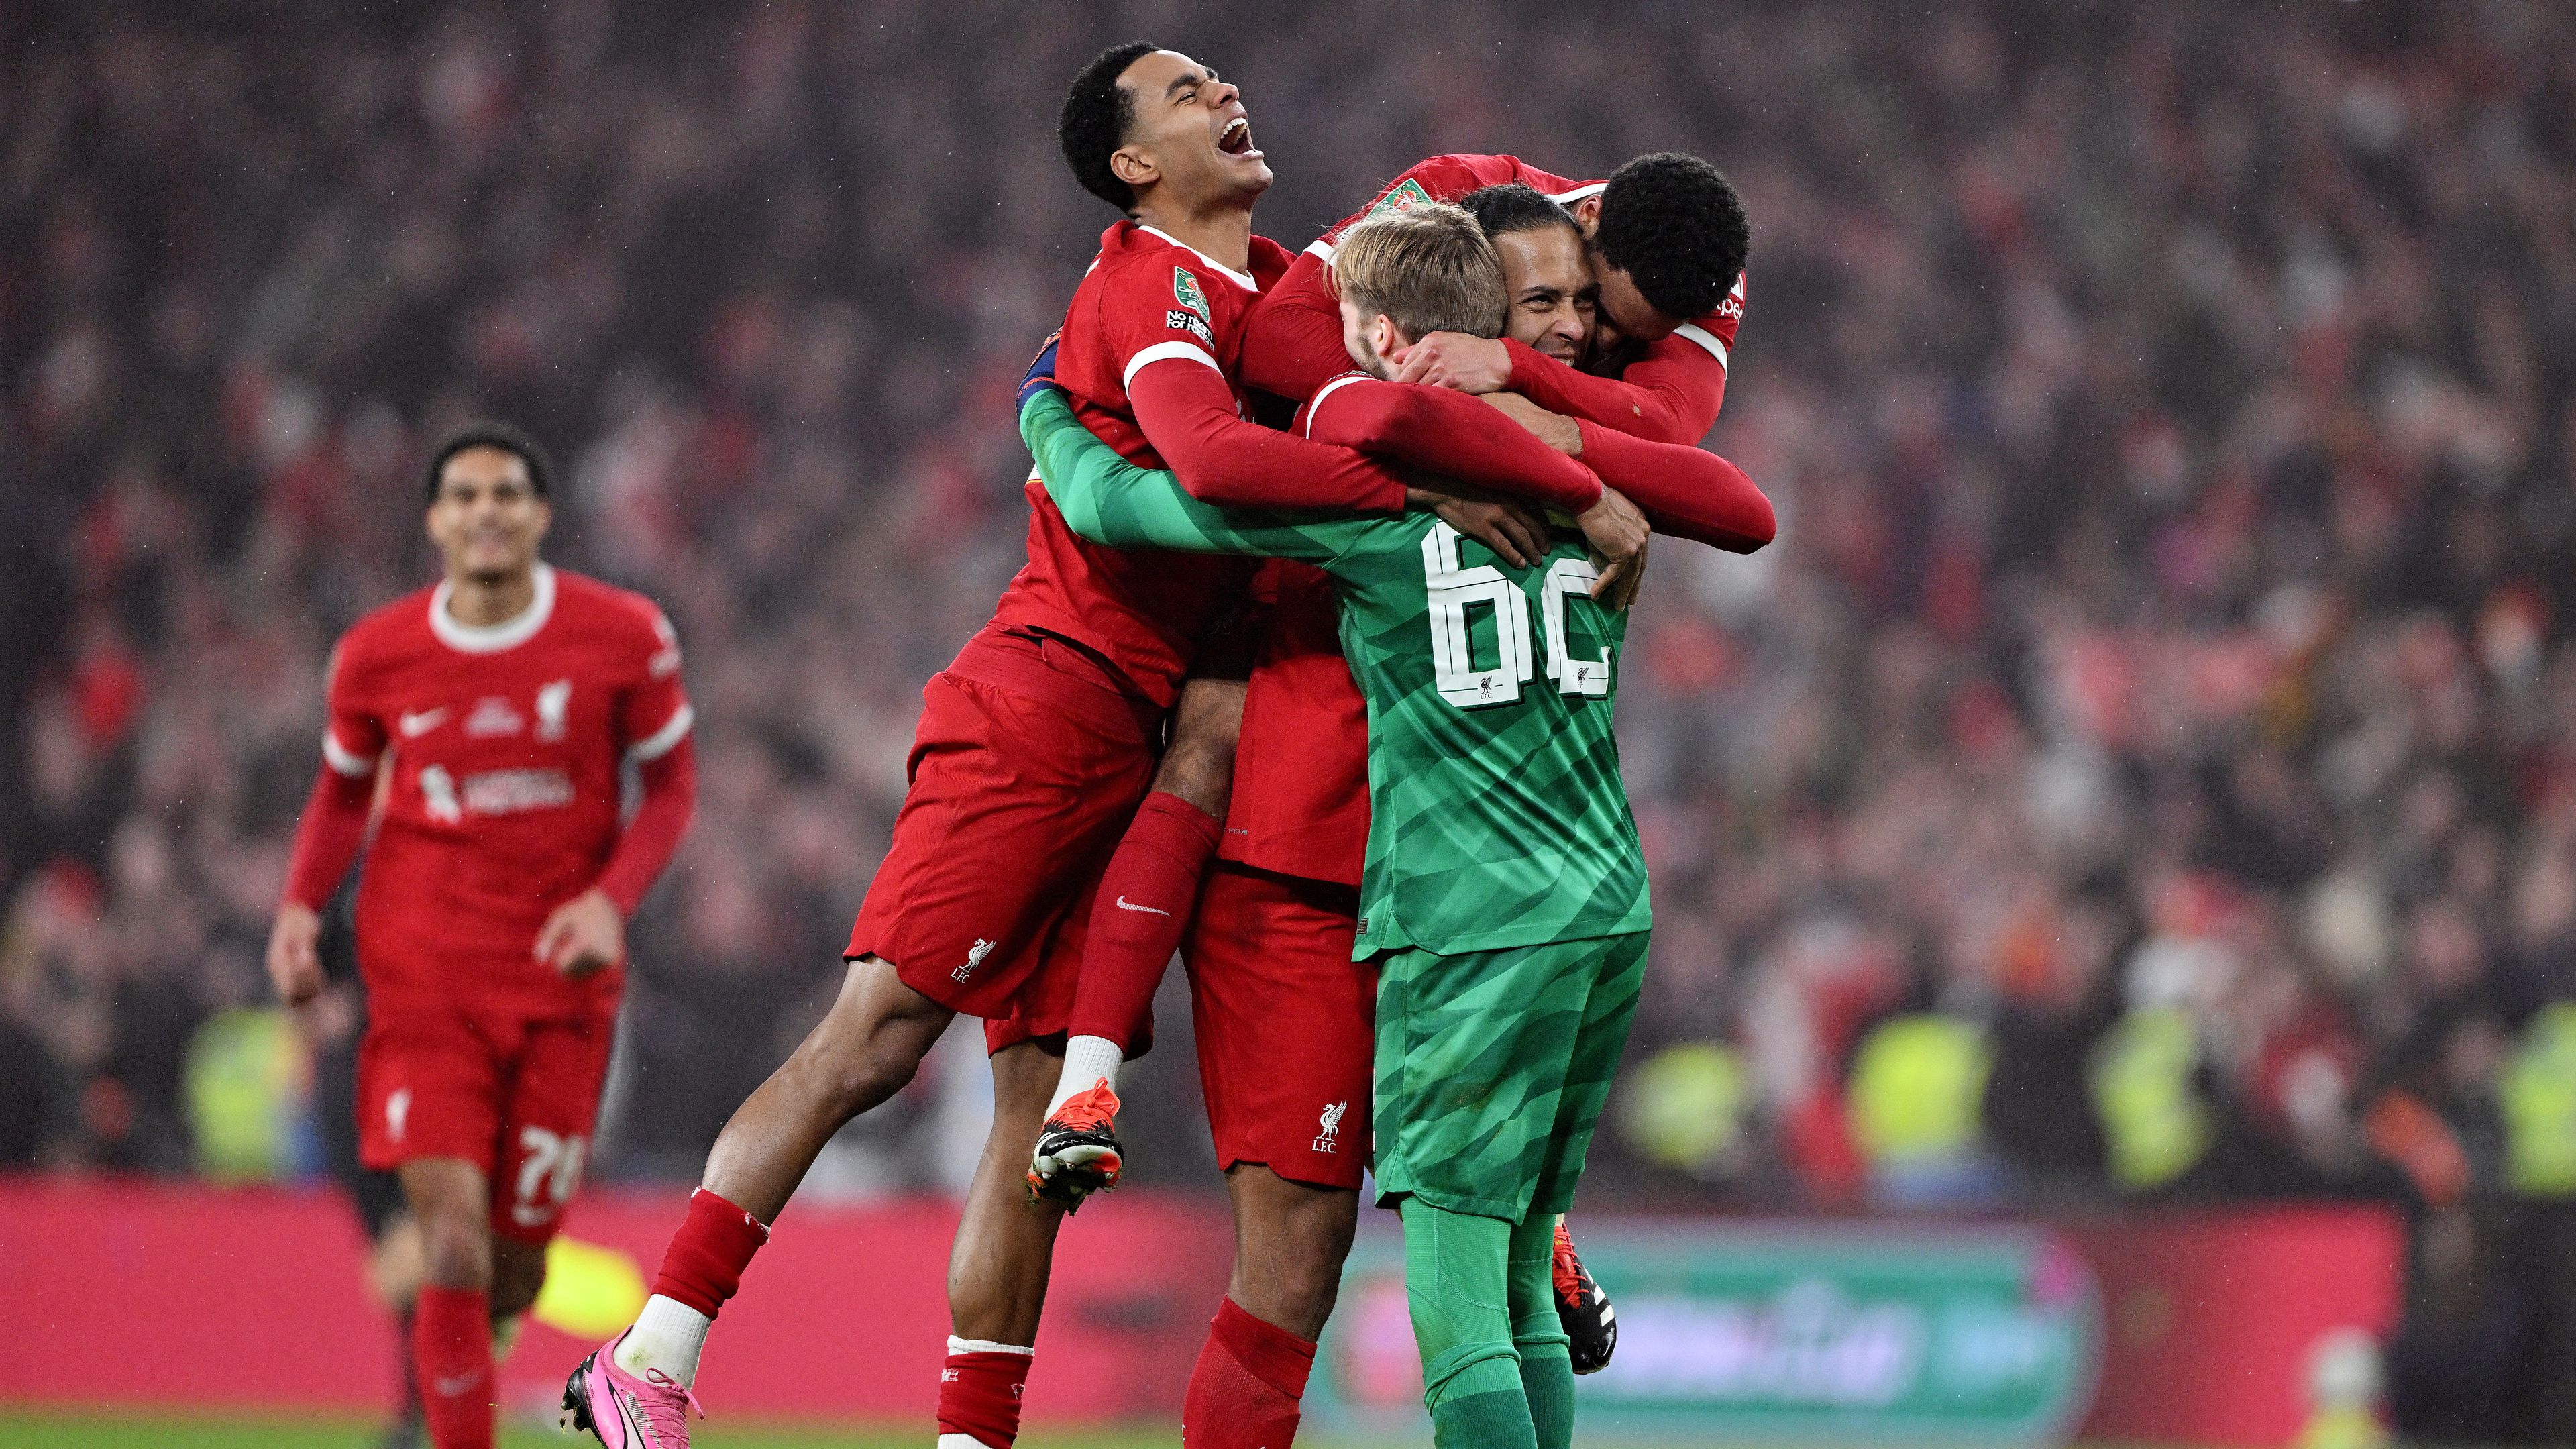 Döntőt nyert a Liverpool; megőrizte vezető helyét a Paks; Fucsovics főtáblára jutott Dubajban – délutáni hírösszefoglaló